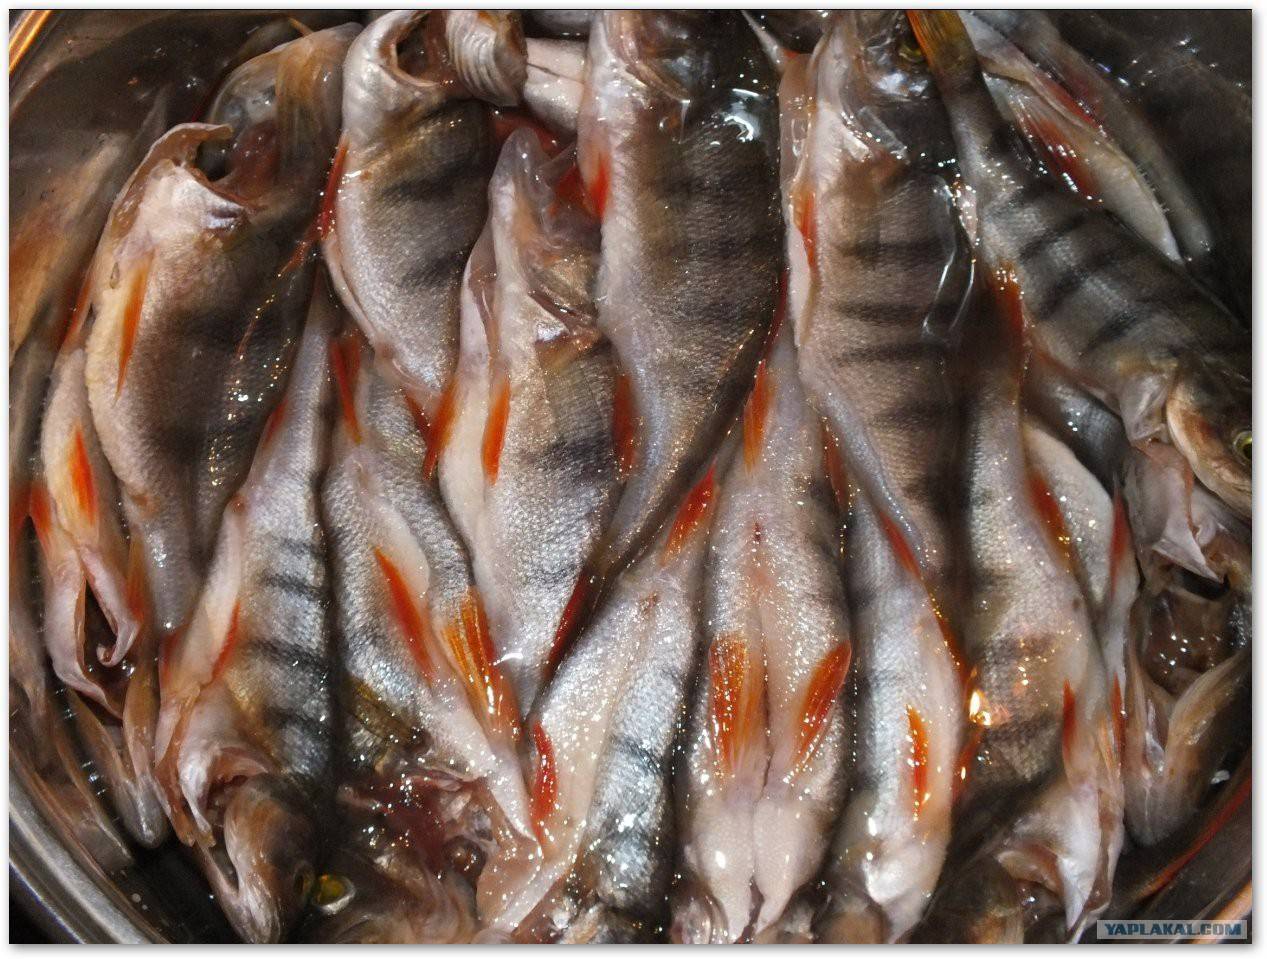 Как засушить рыбу в домашних условиях:процесс,рыба для сушки,места в квартире и доме и как лучше повесить рыбу